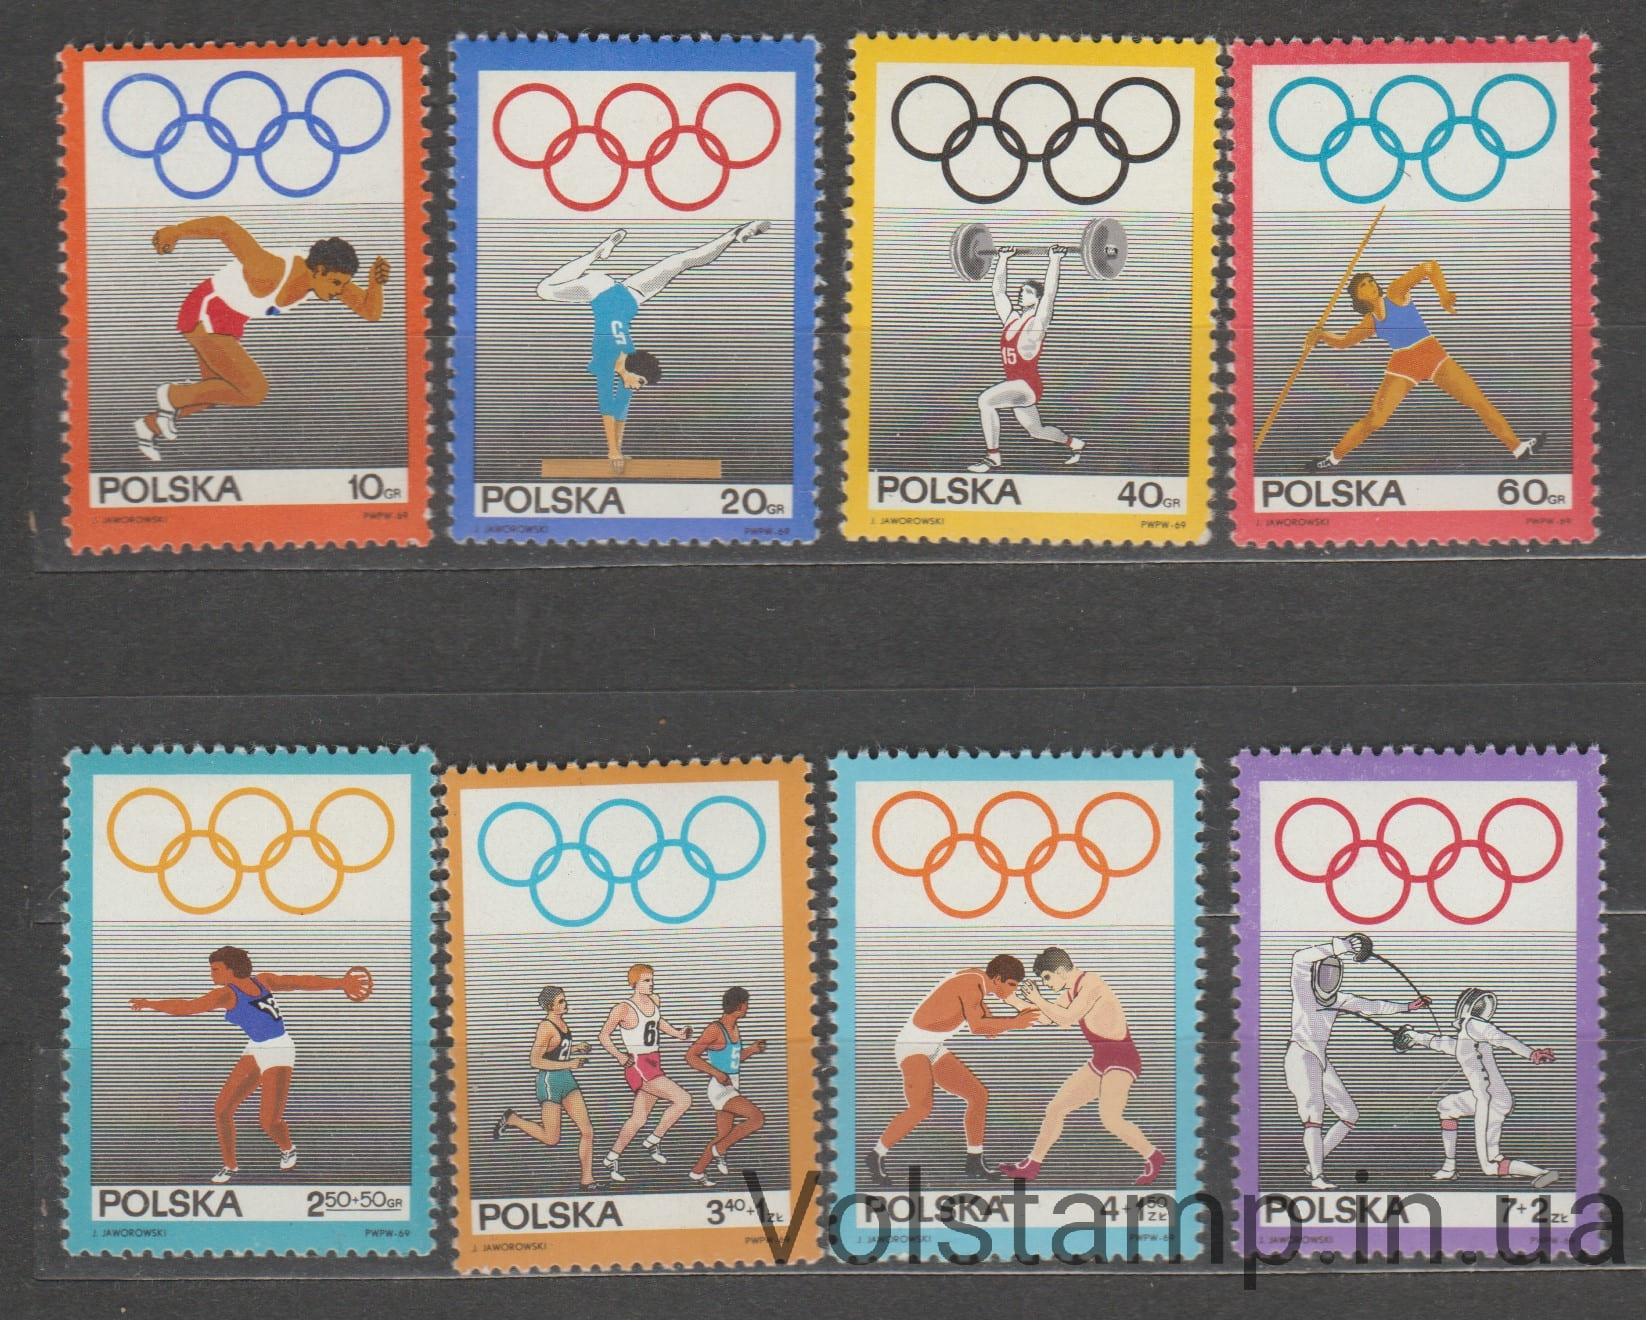 1969 Польша Серия марок (Спорт, 50 лет. Польского олимпийского комитета) MNH №1908-1915